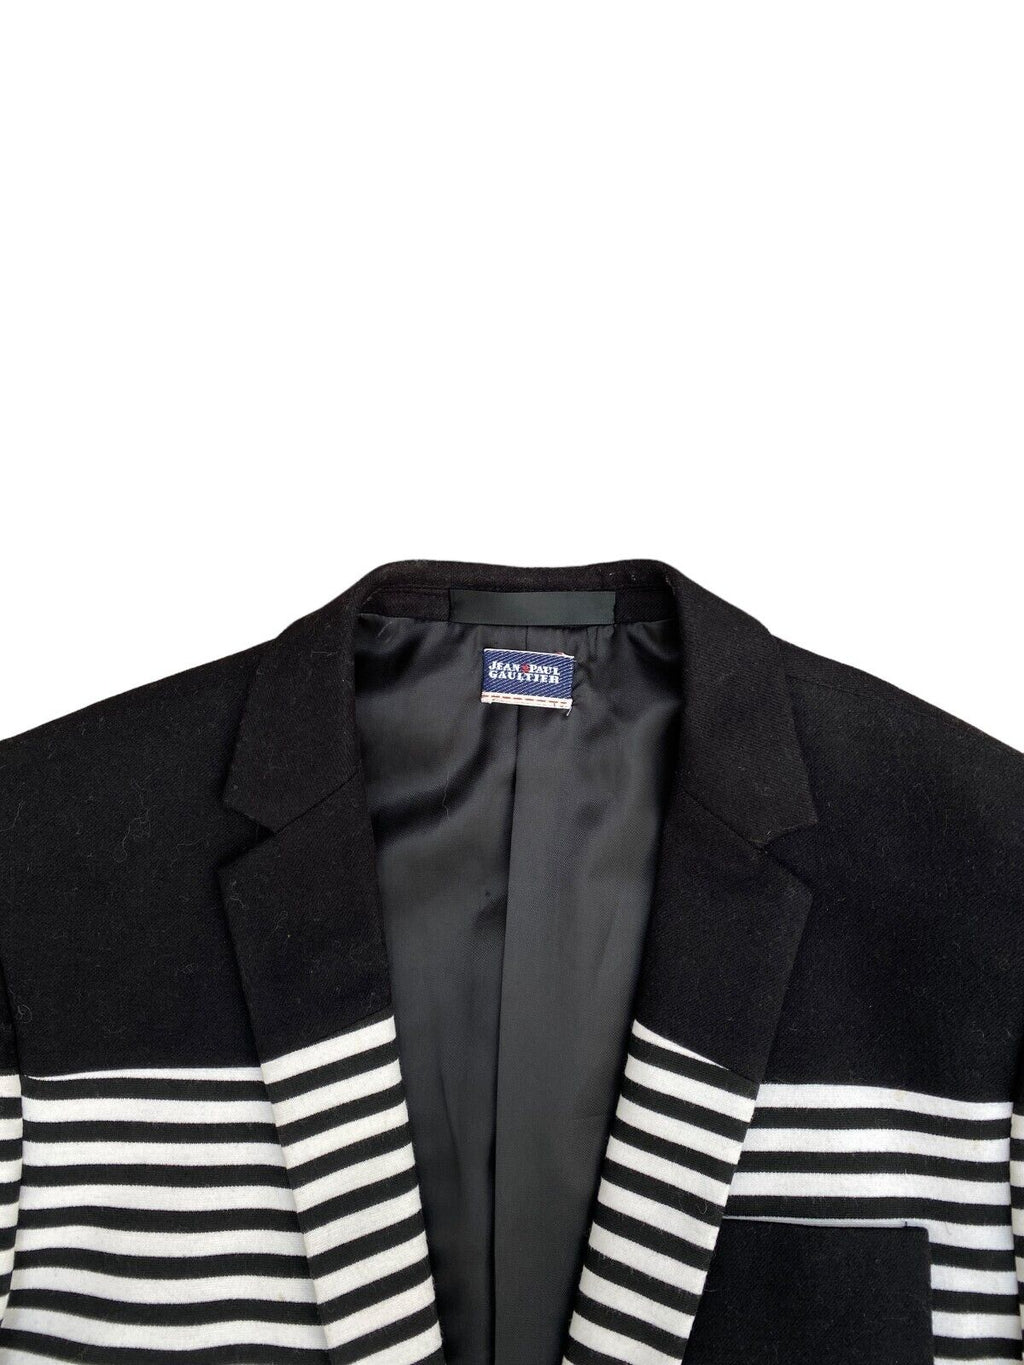 Navy White Striped Blazer Jacket